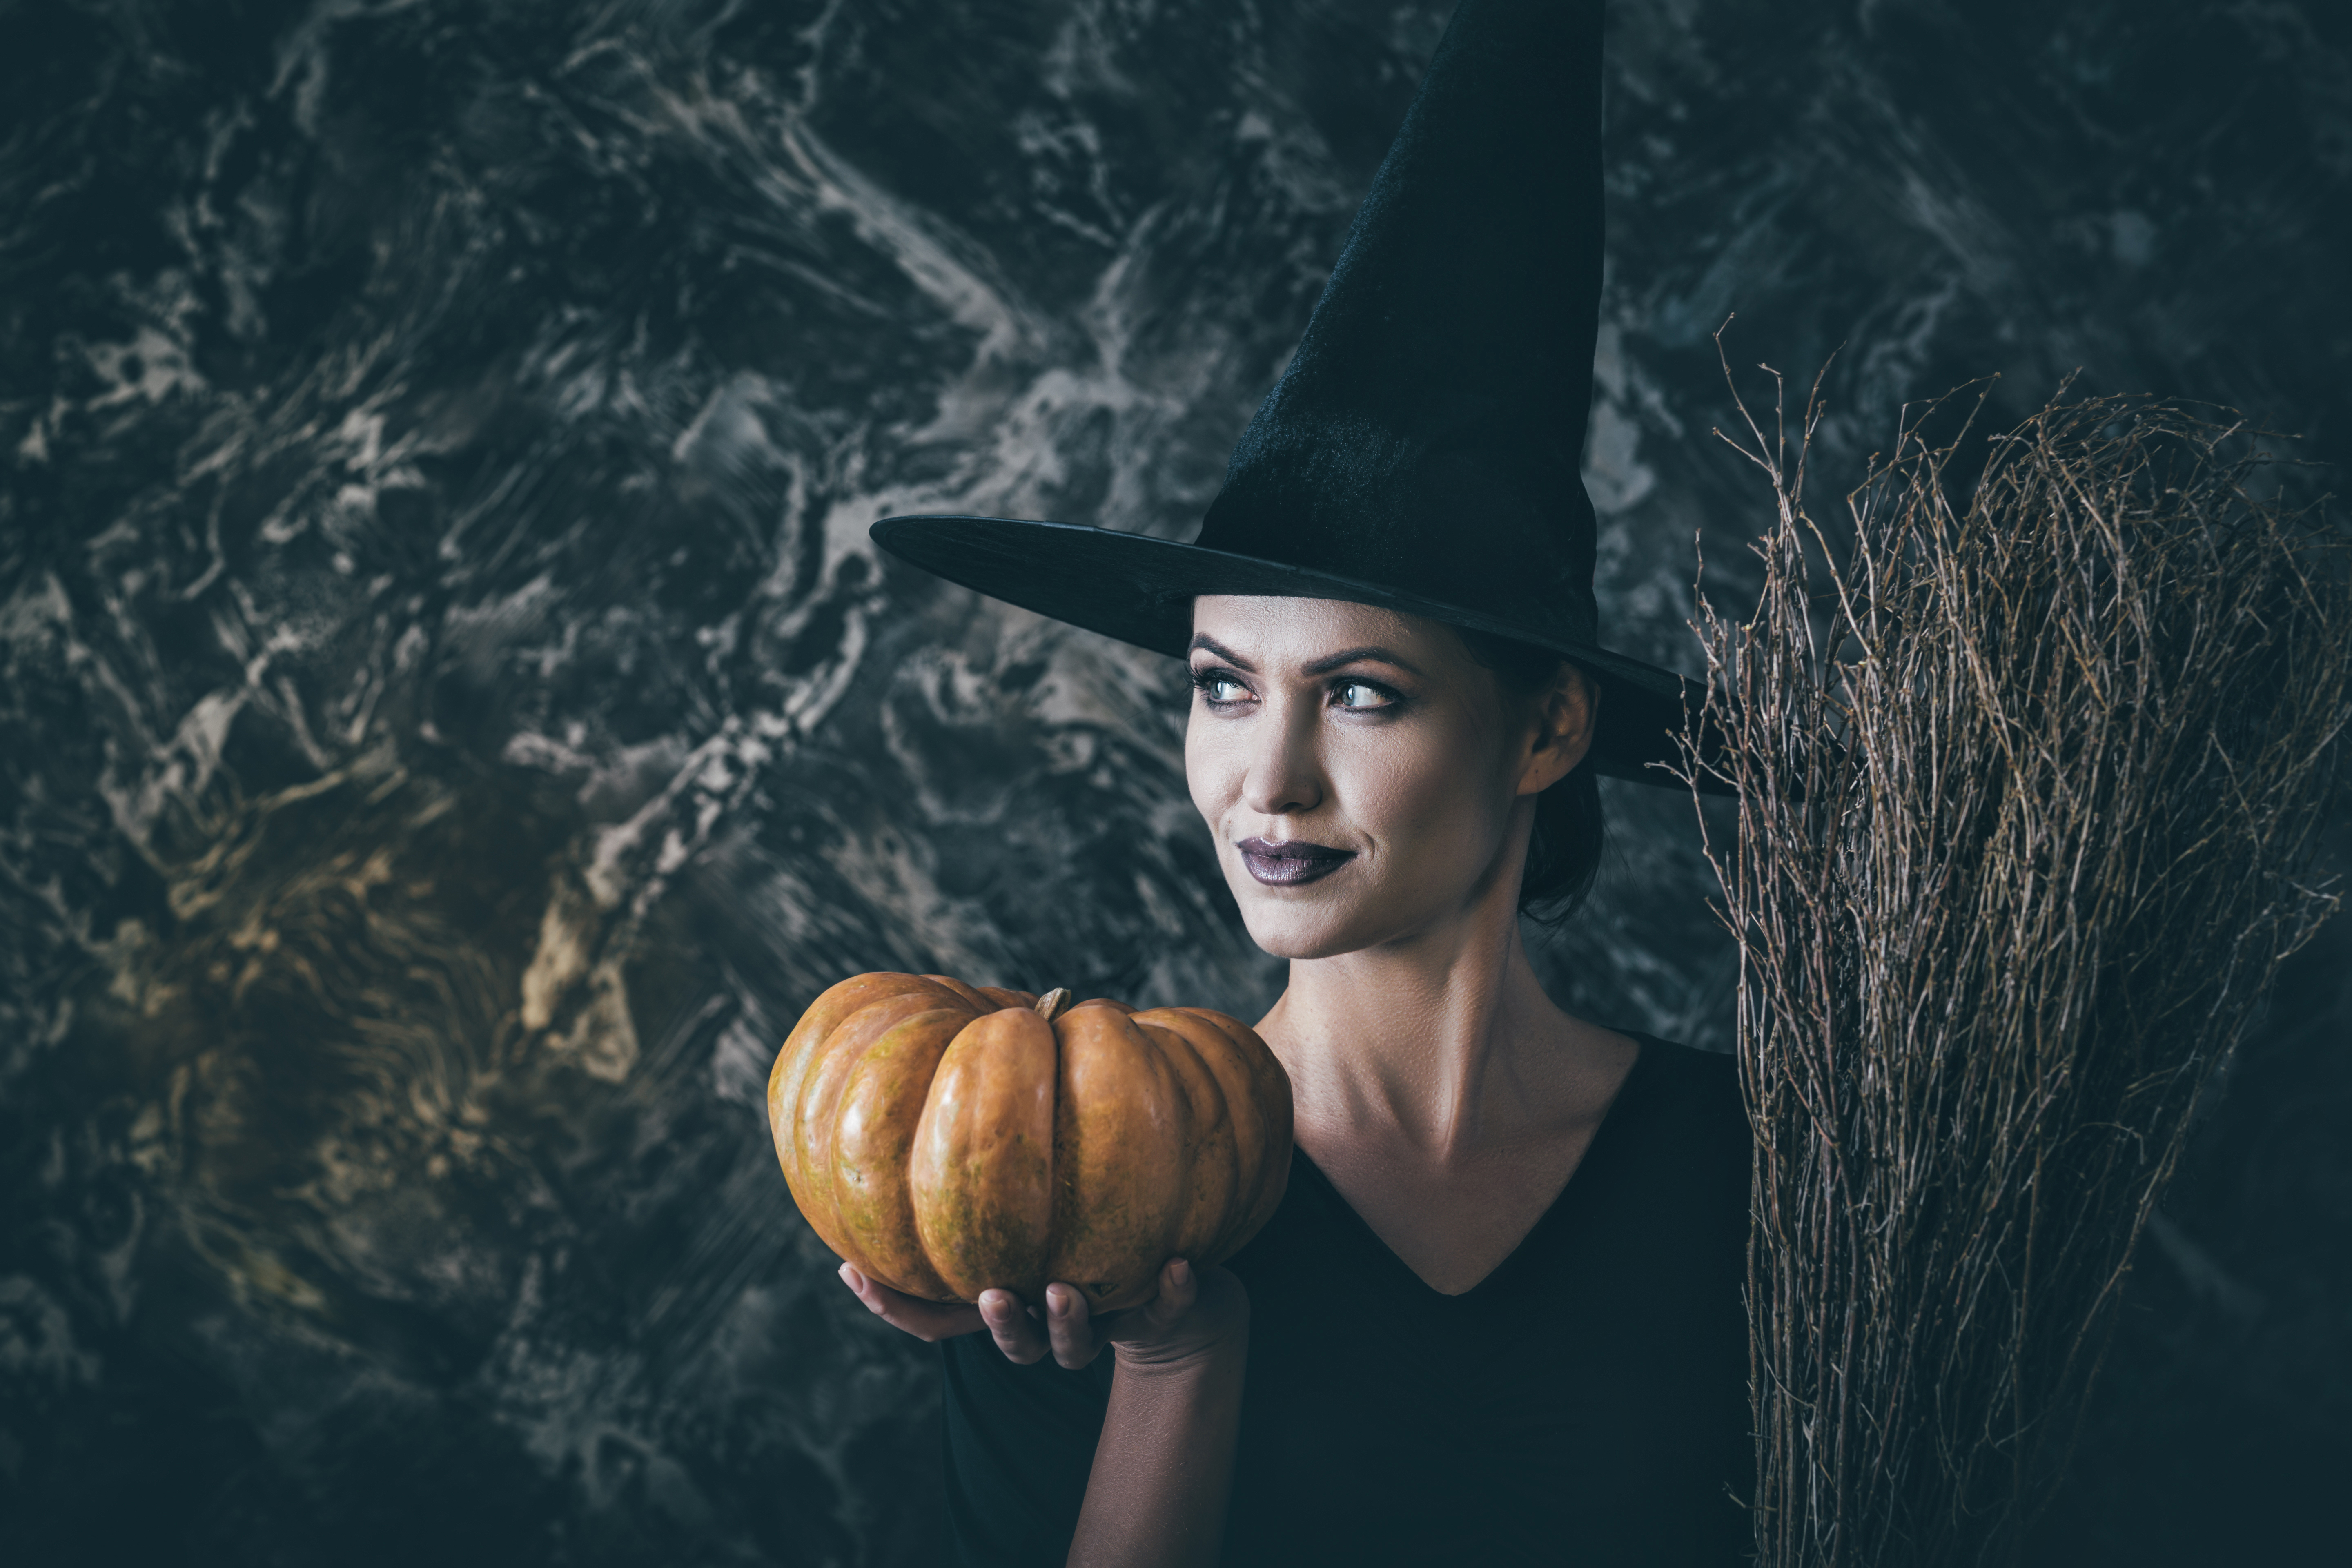 Fantasia de Halloween improvisada: veja ideias simples para o Dia das  Bruxas